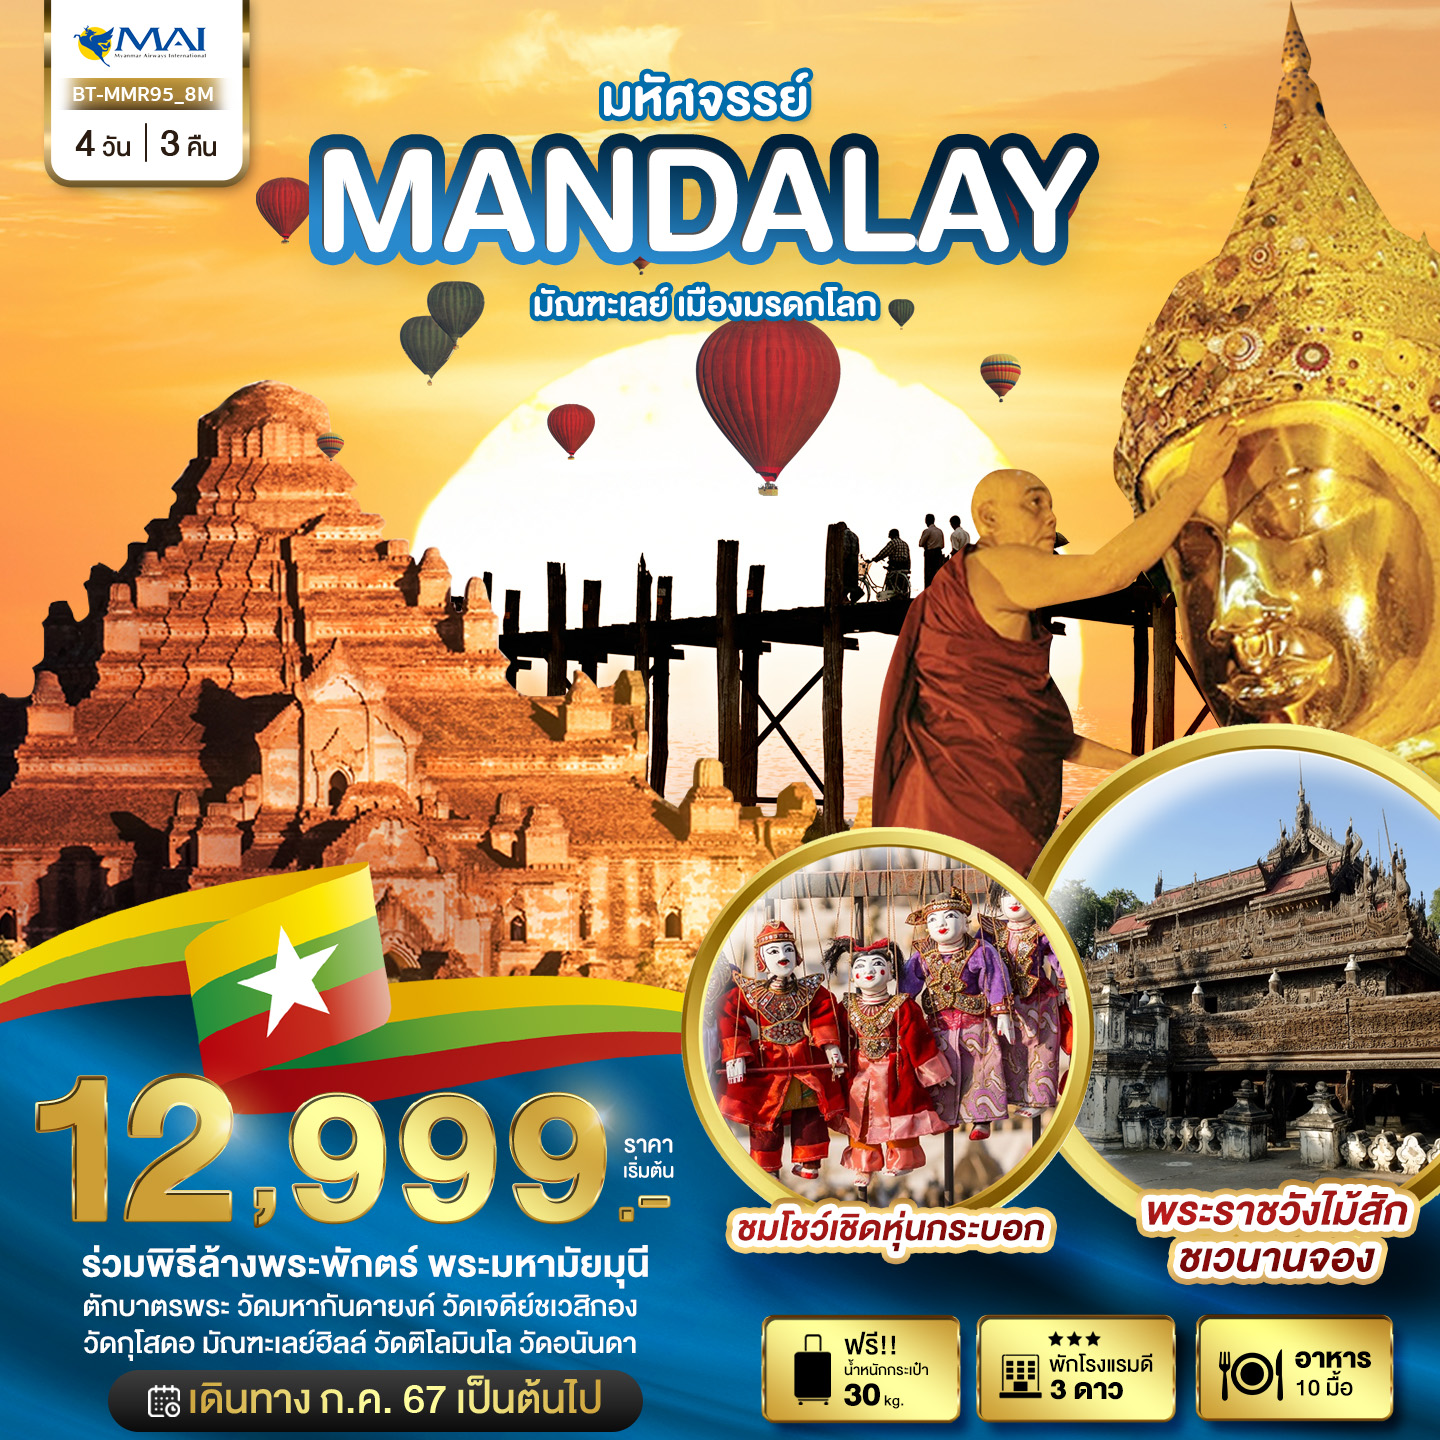 MANDALAY มหัศจรรย์ มัณฑะเลย์ เมืองมรดกโลก 4วัน 3คืน by MYANMAR AIRWAYS